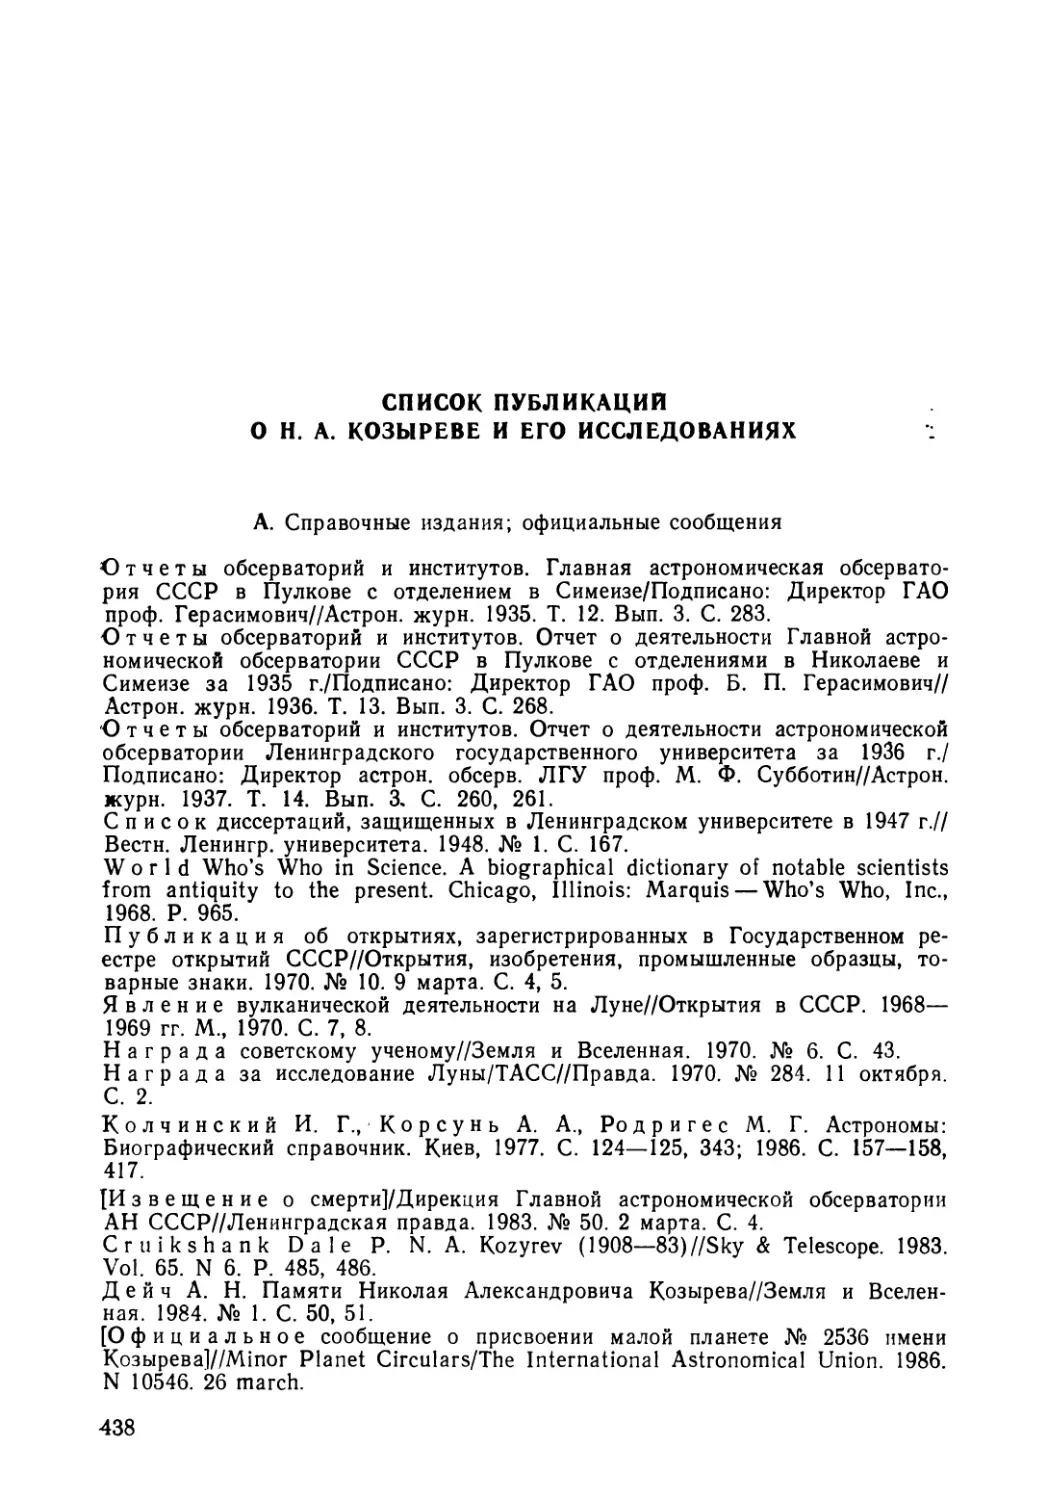 Список публикаций о Н. А. Козыреве и его исследованиях